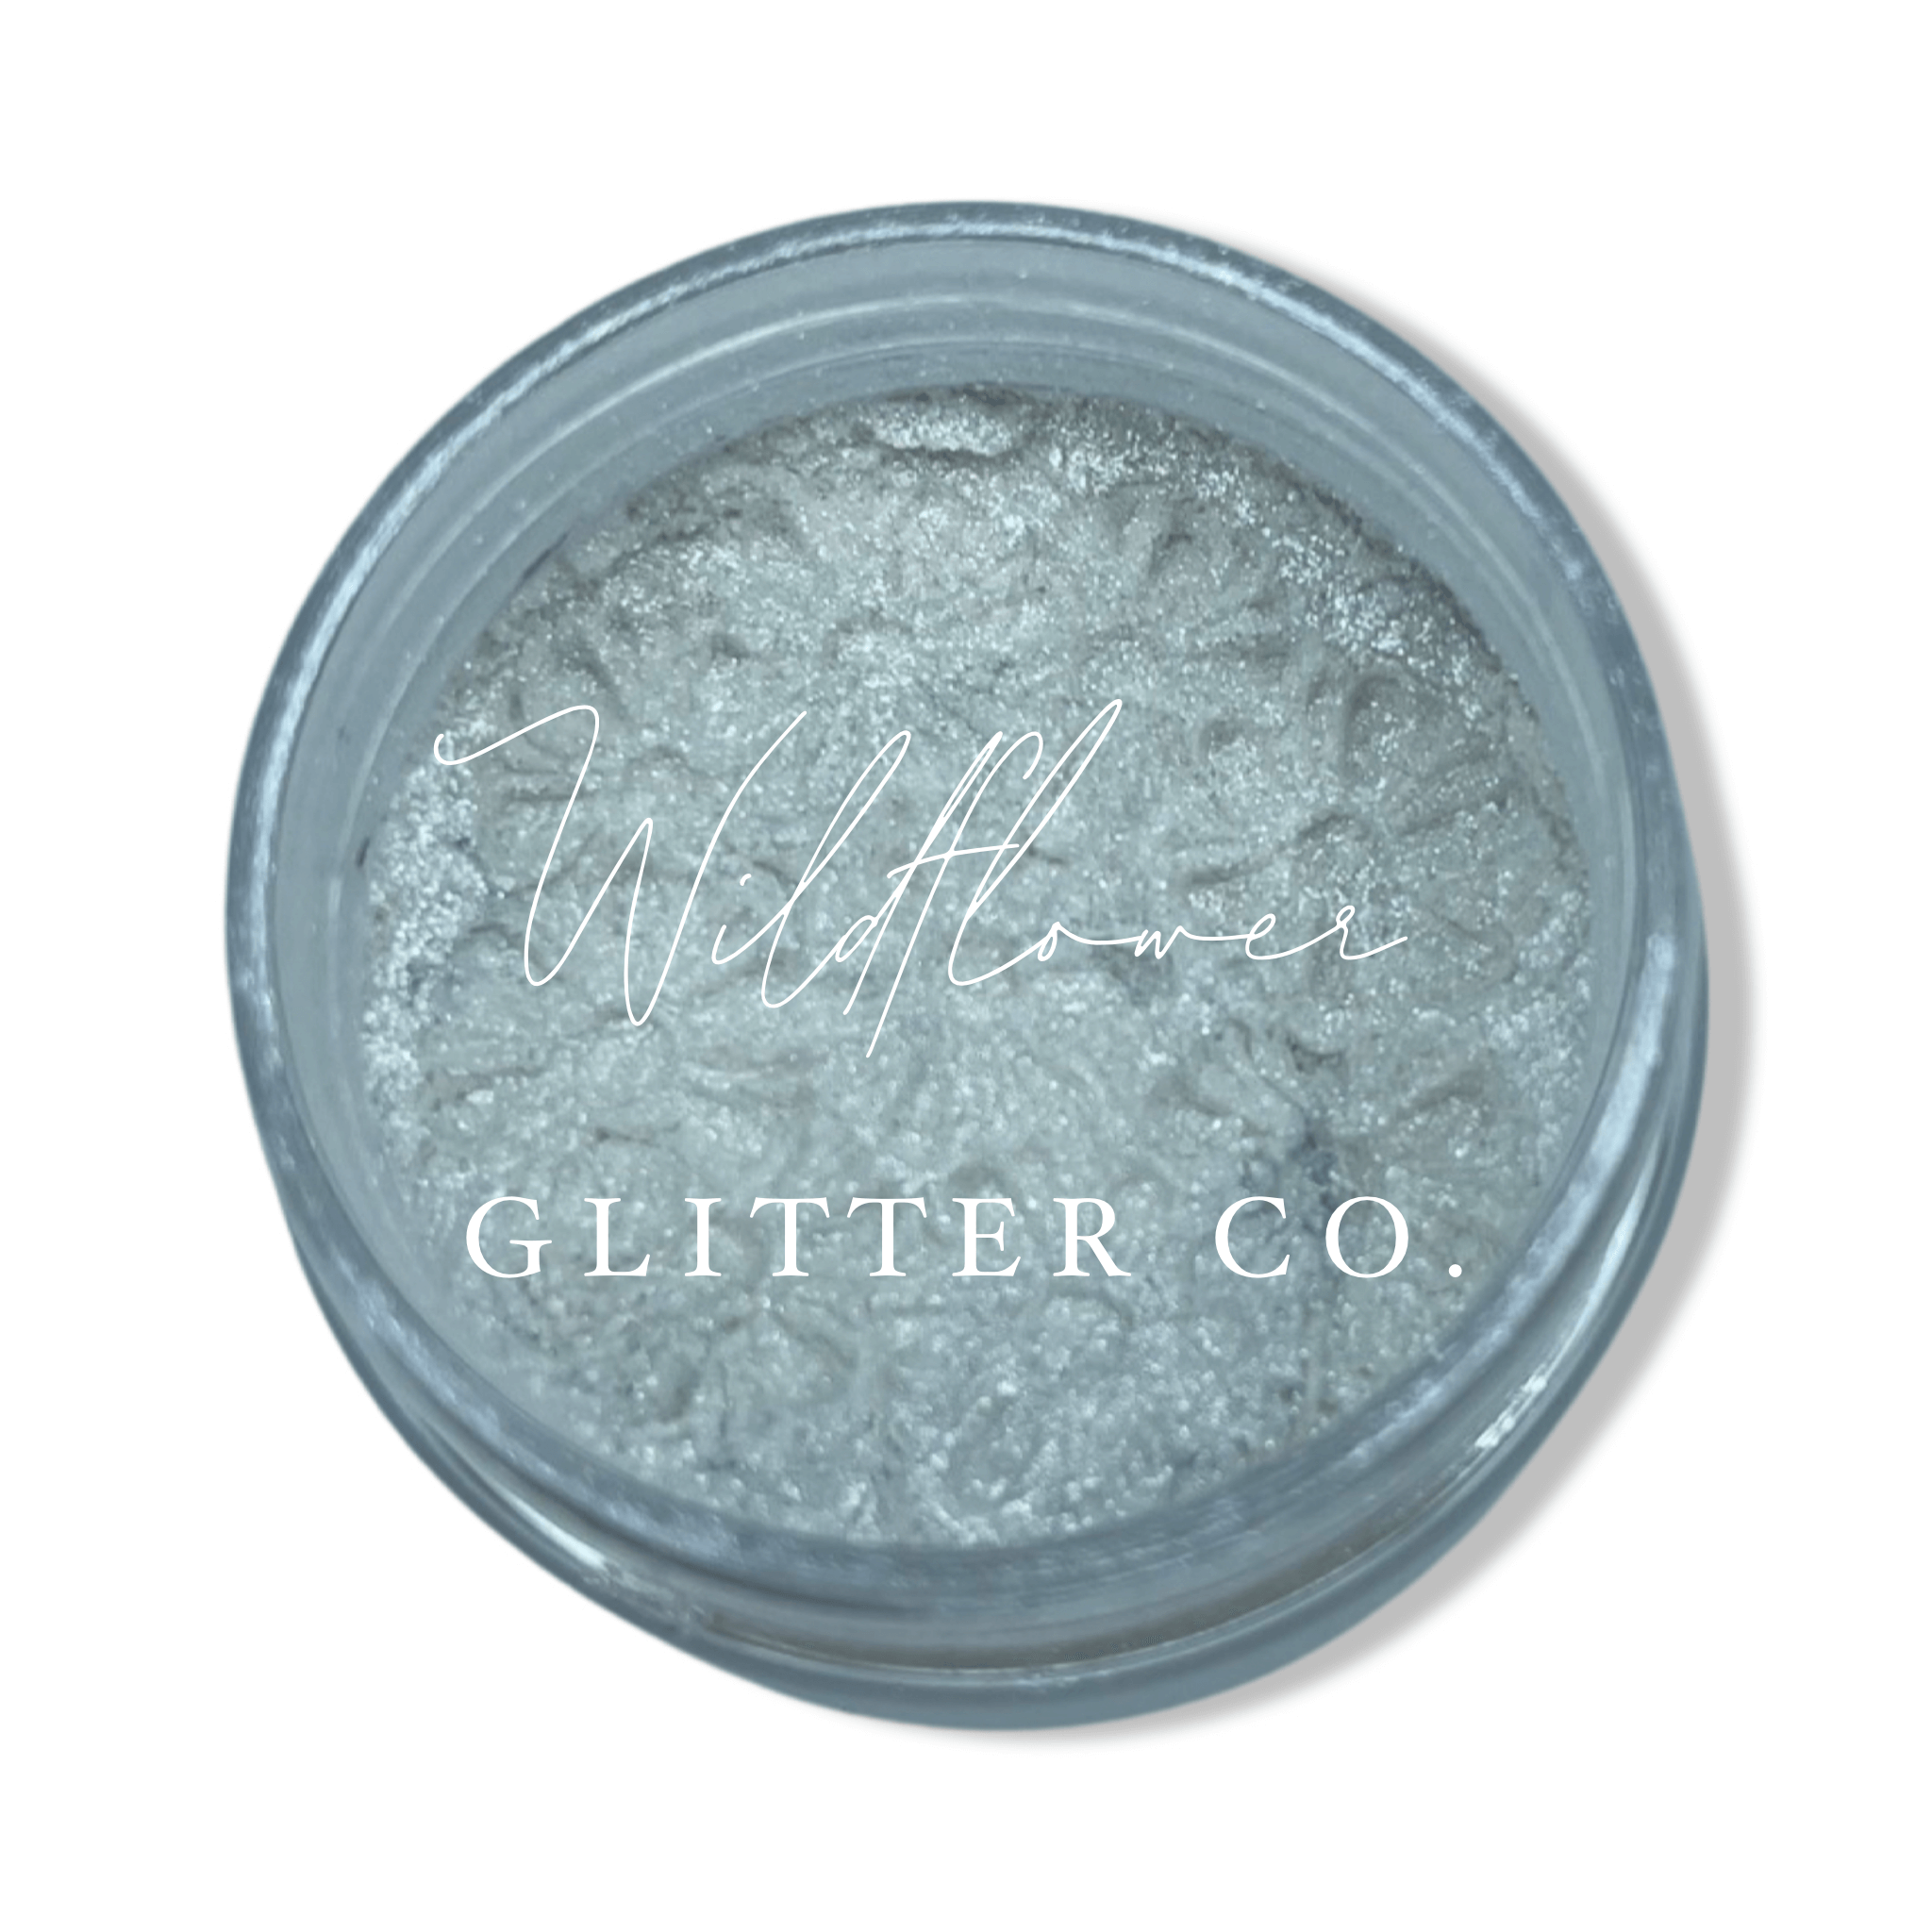 White Glitter – Mystique Glitter Co.